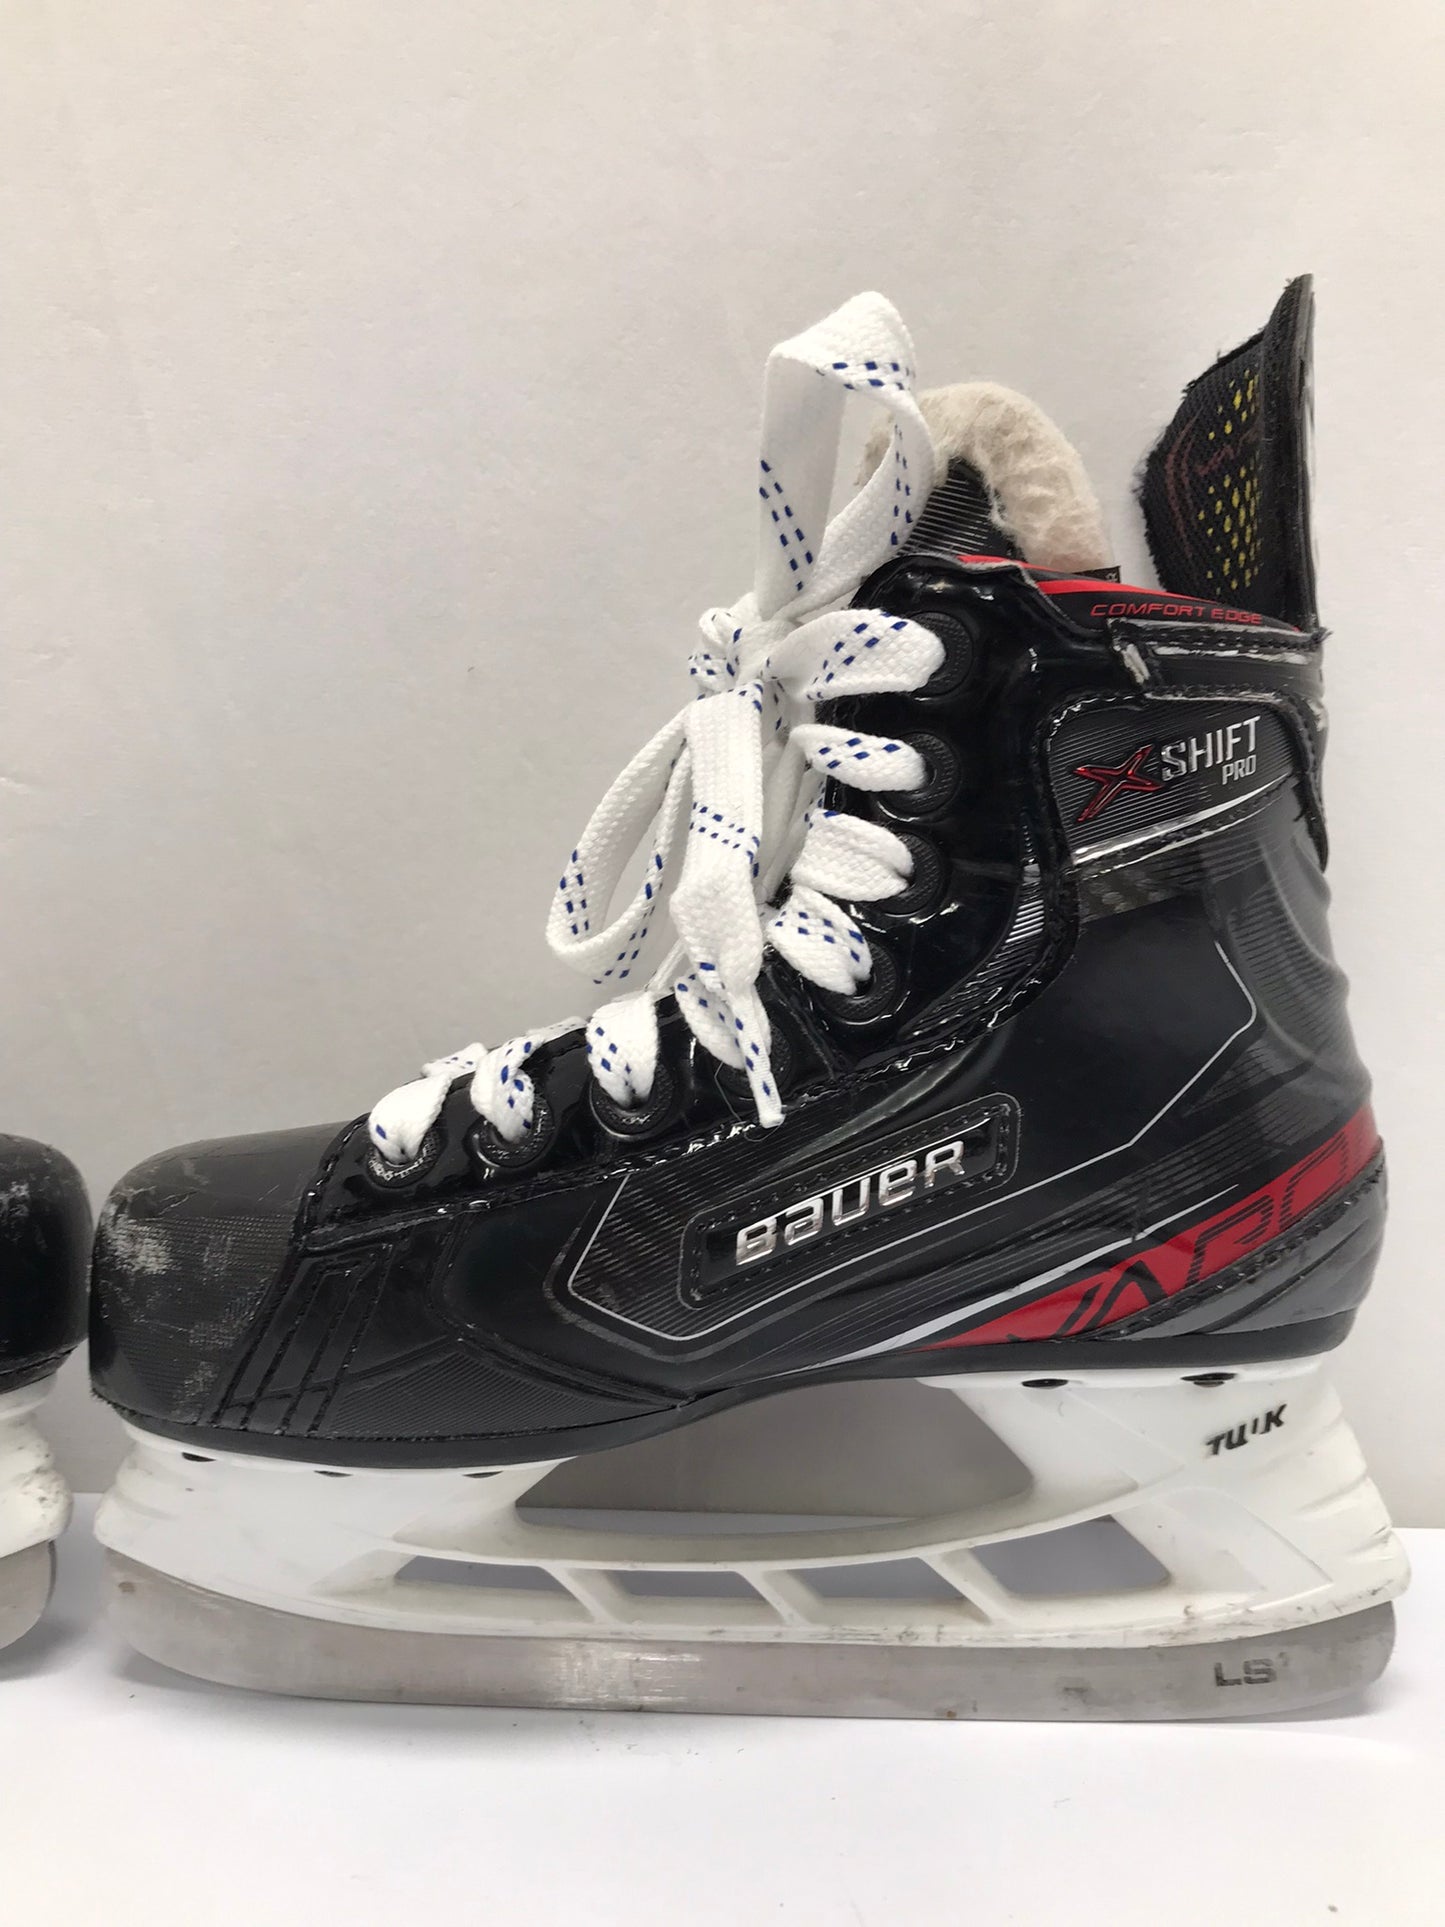 Hockey Skates Child Size 1.5 Shoe Size Bauer Vapor